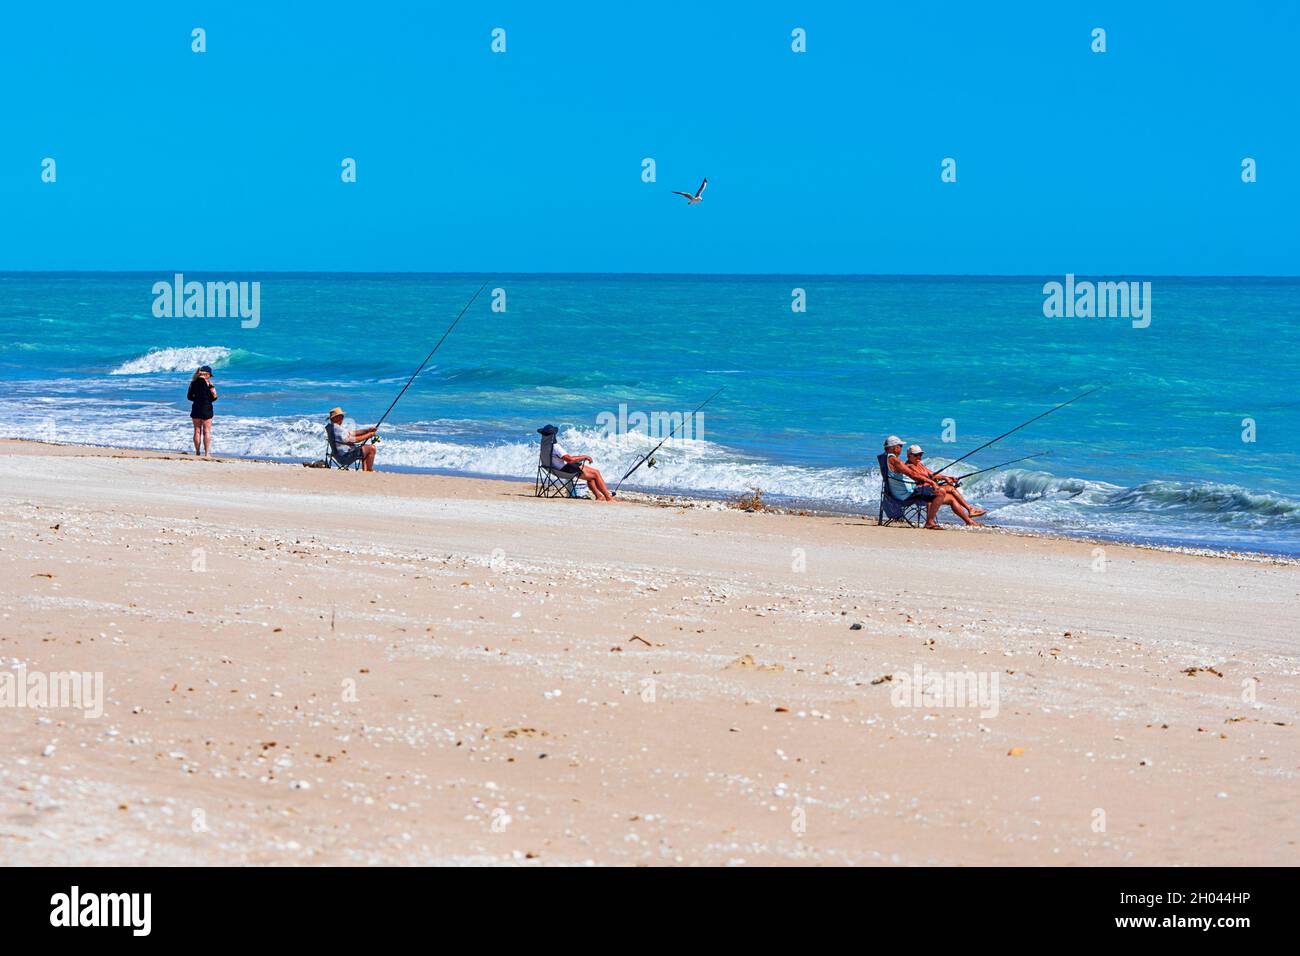 Pesca dalla sedia immagini e fotografie stock ad alta risoluzione - Alamy